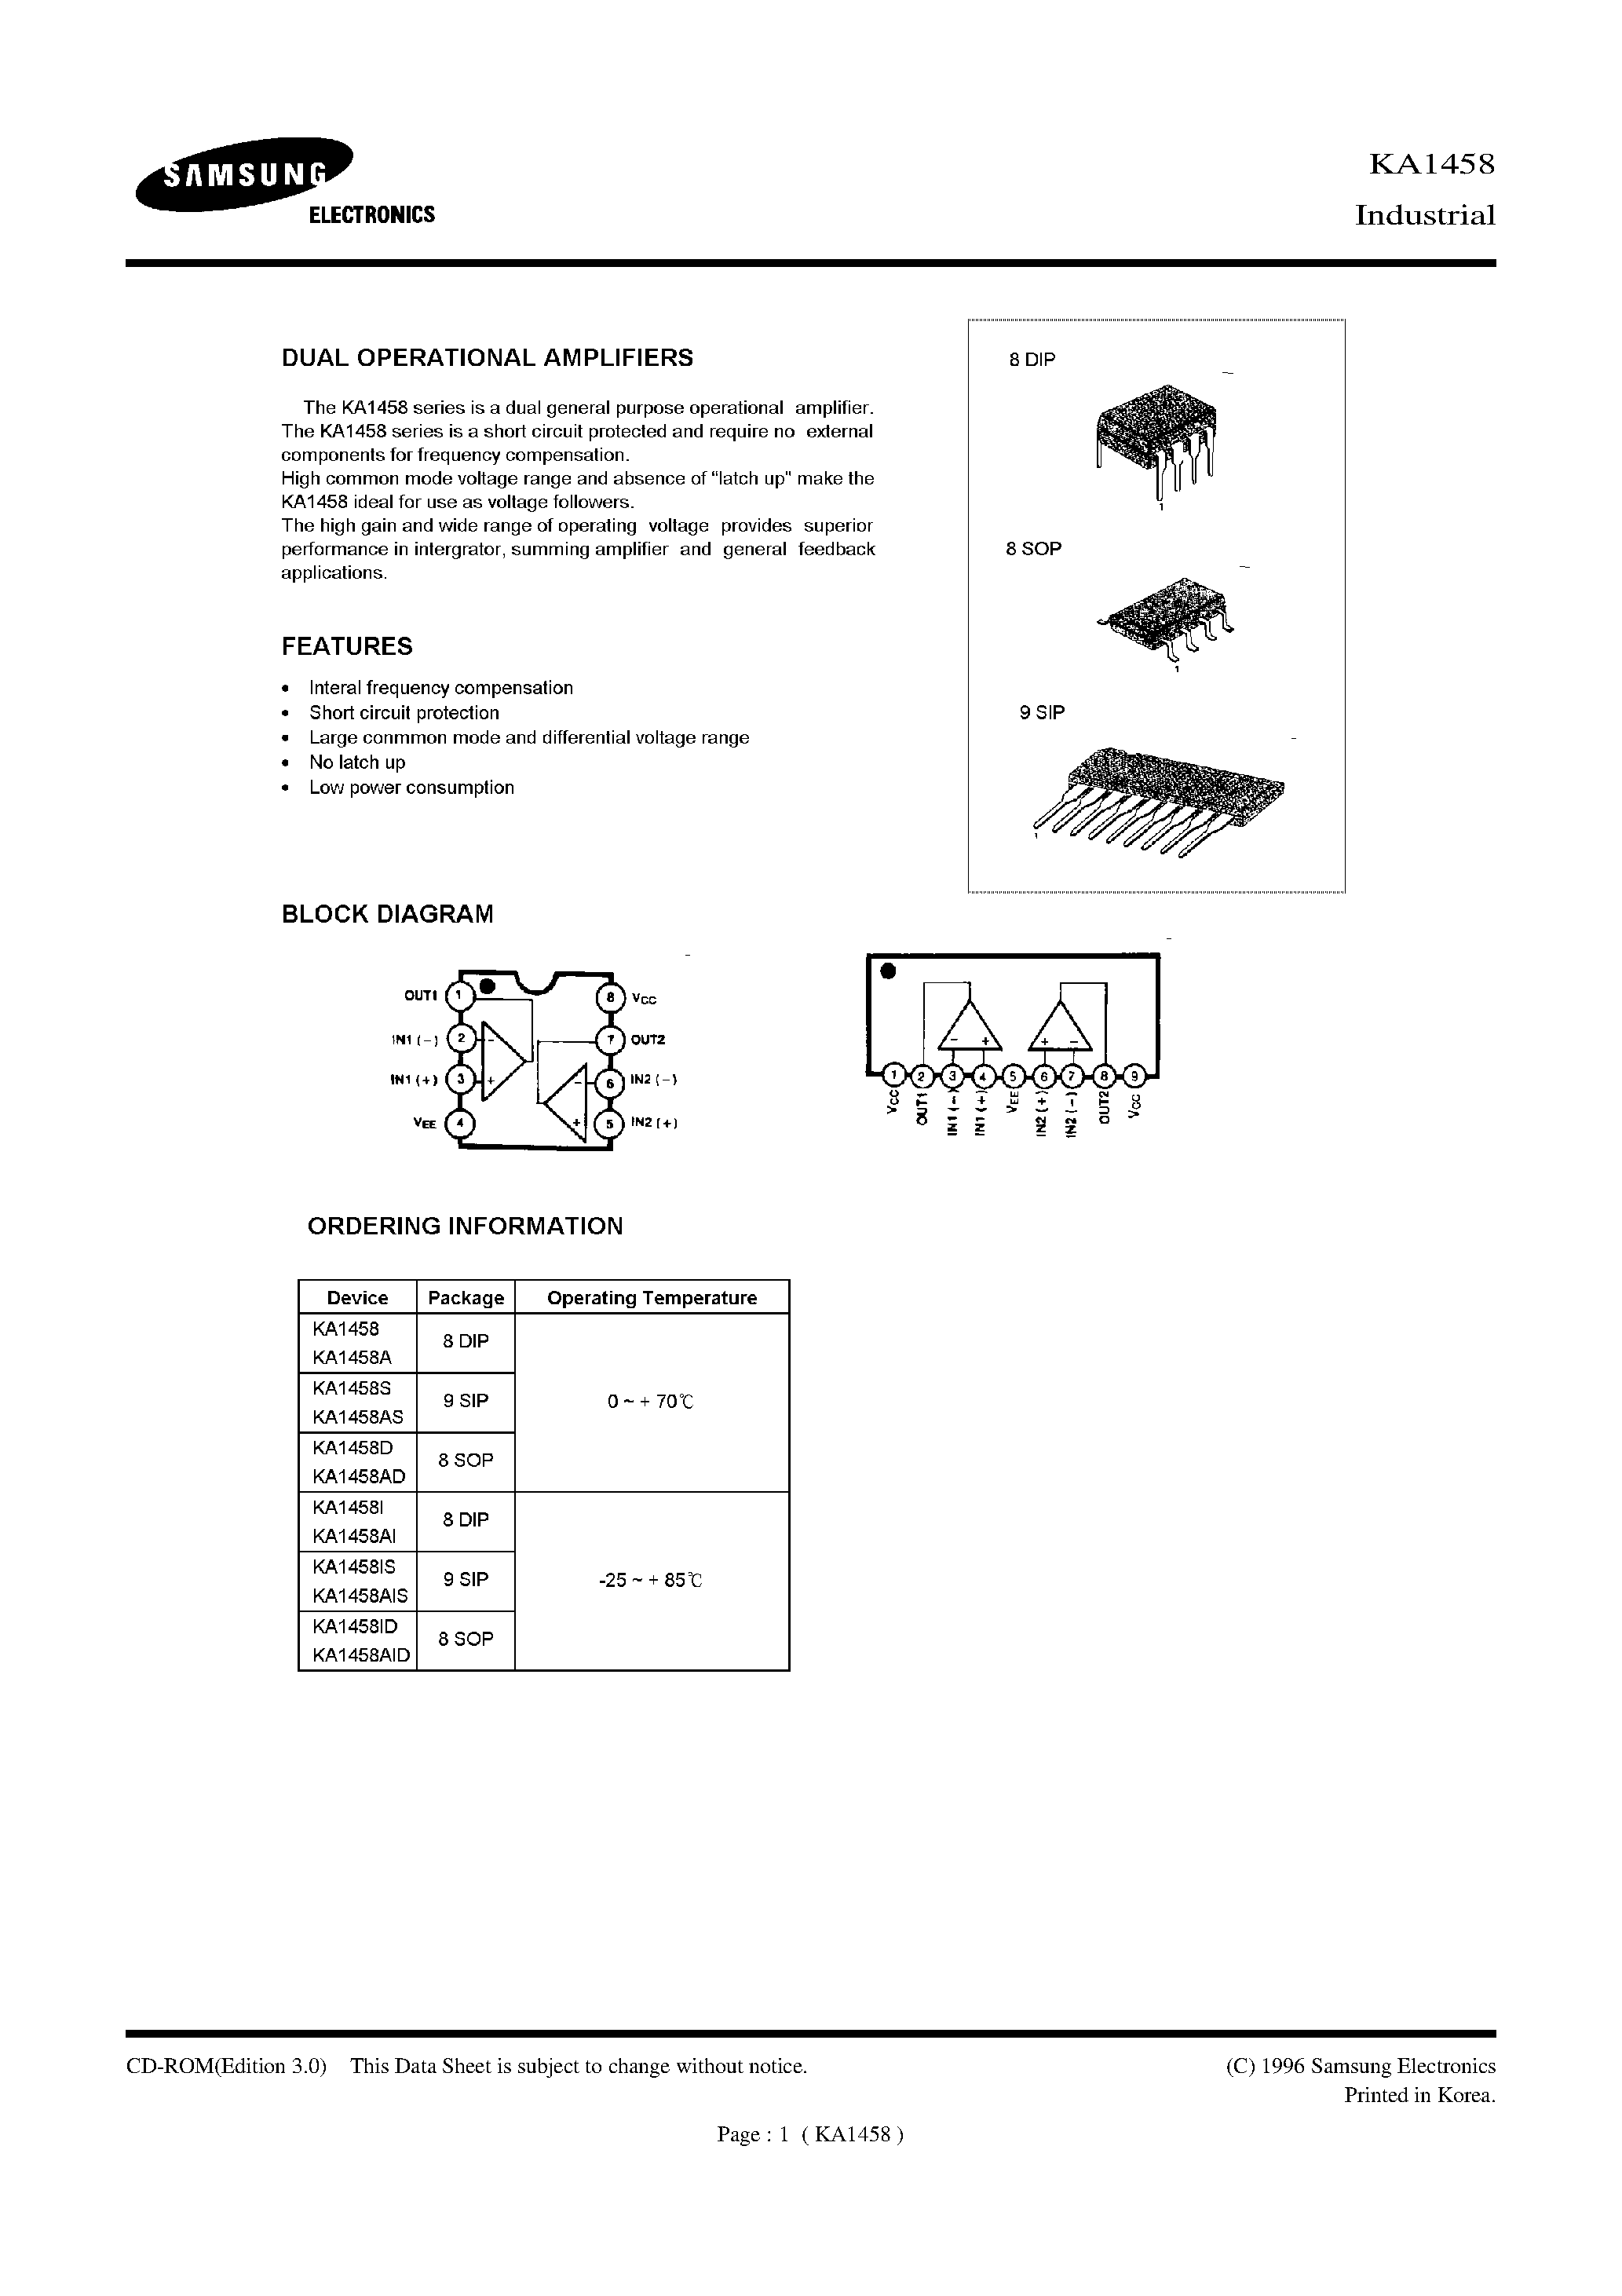 Datasheet KA1458I - DUAL OPERATIONAL AMPLIFIERS page 1